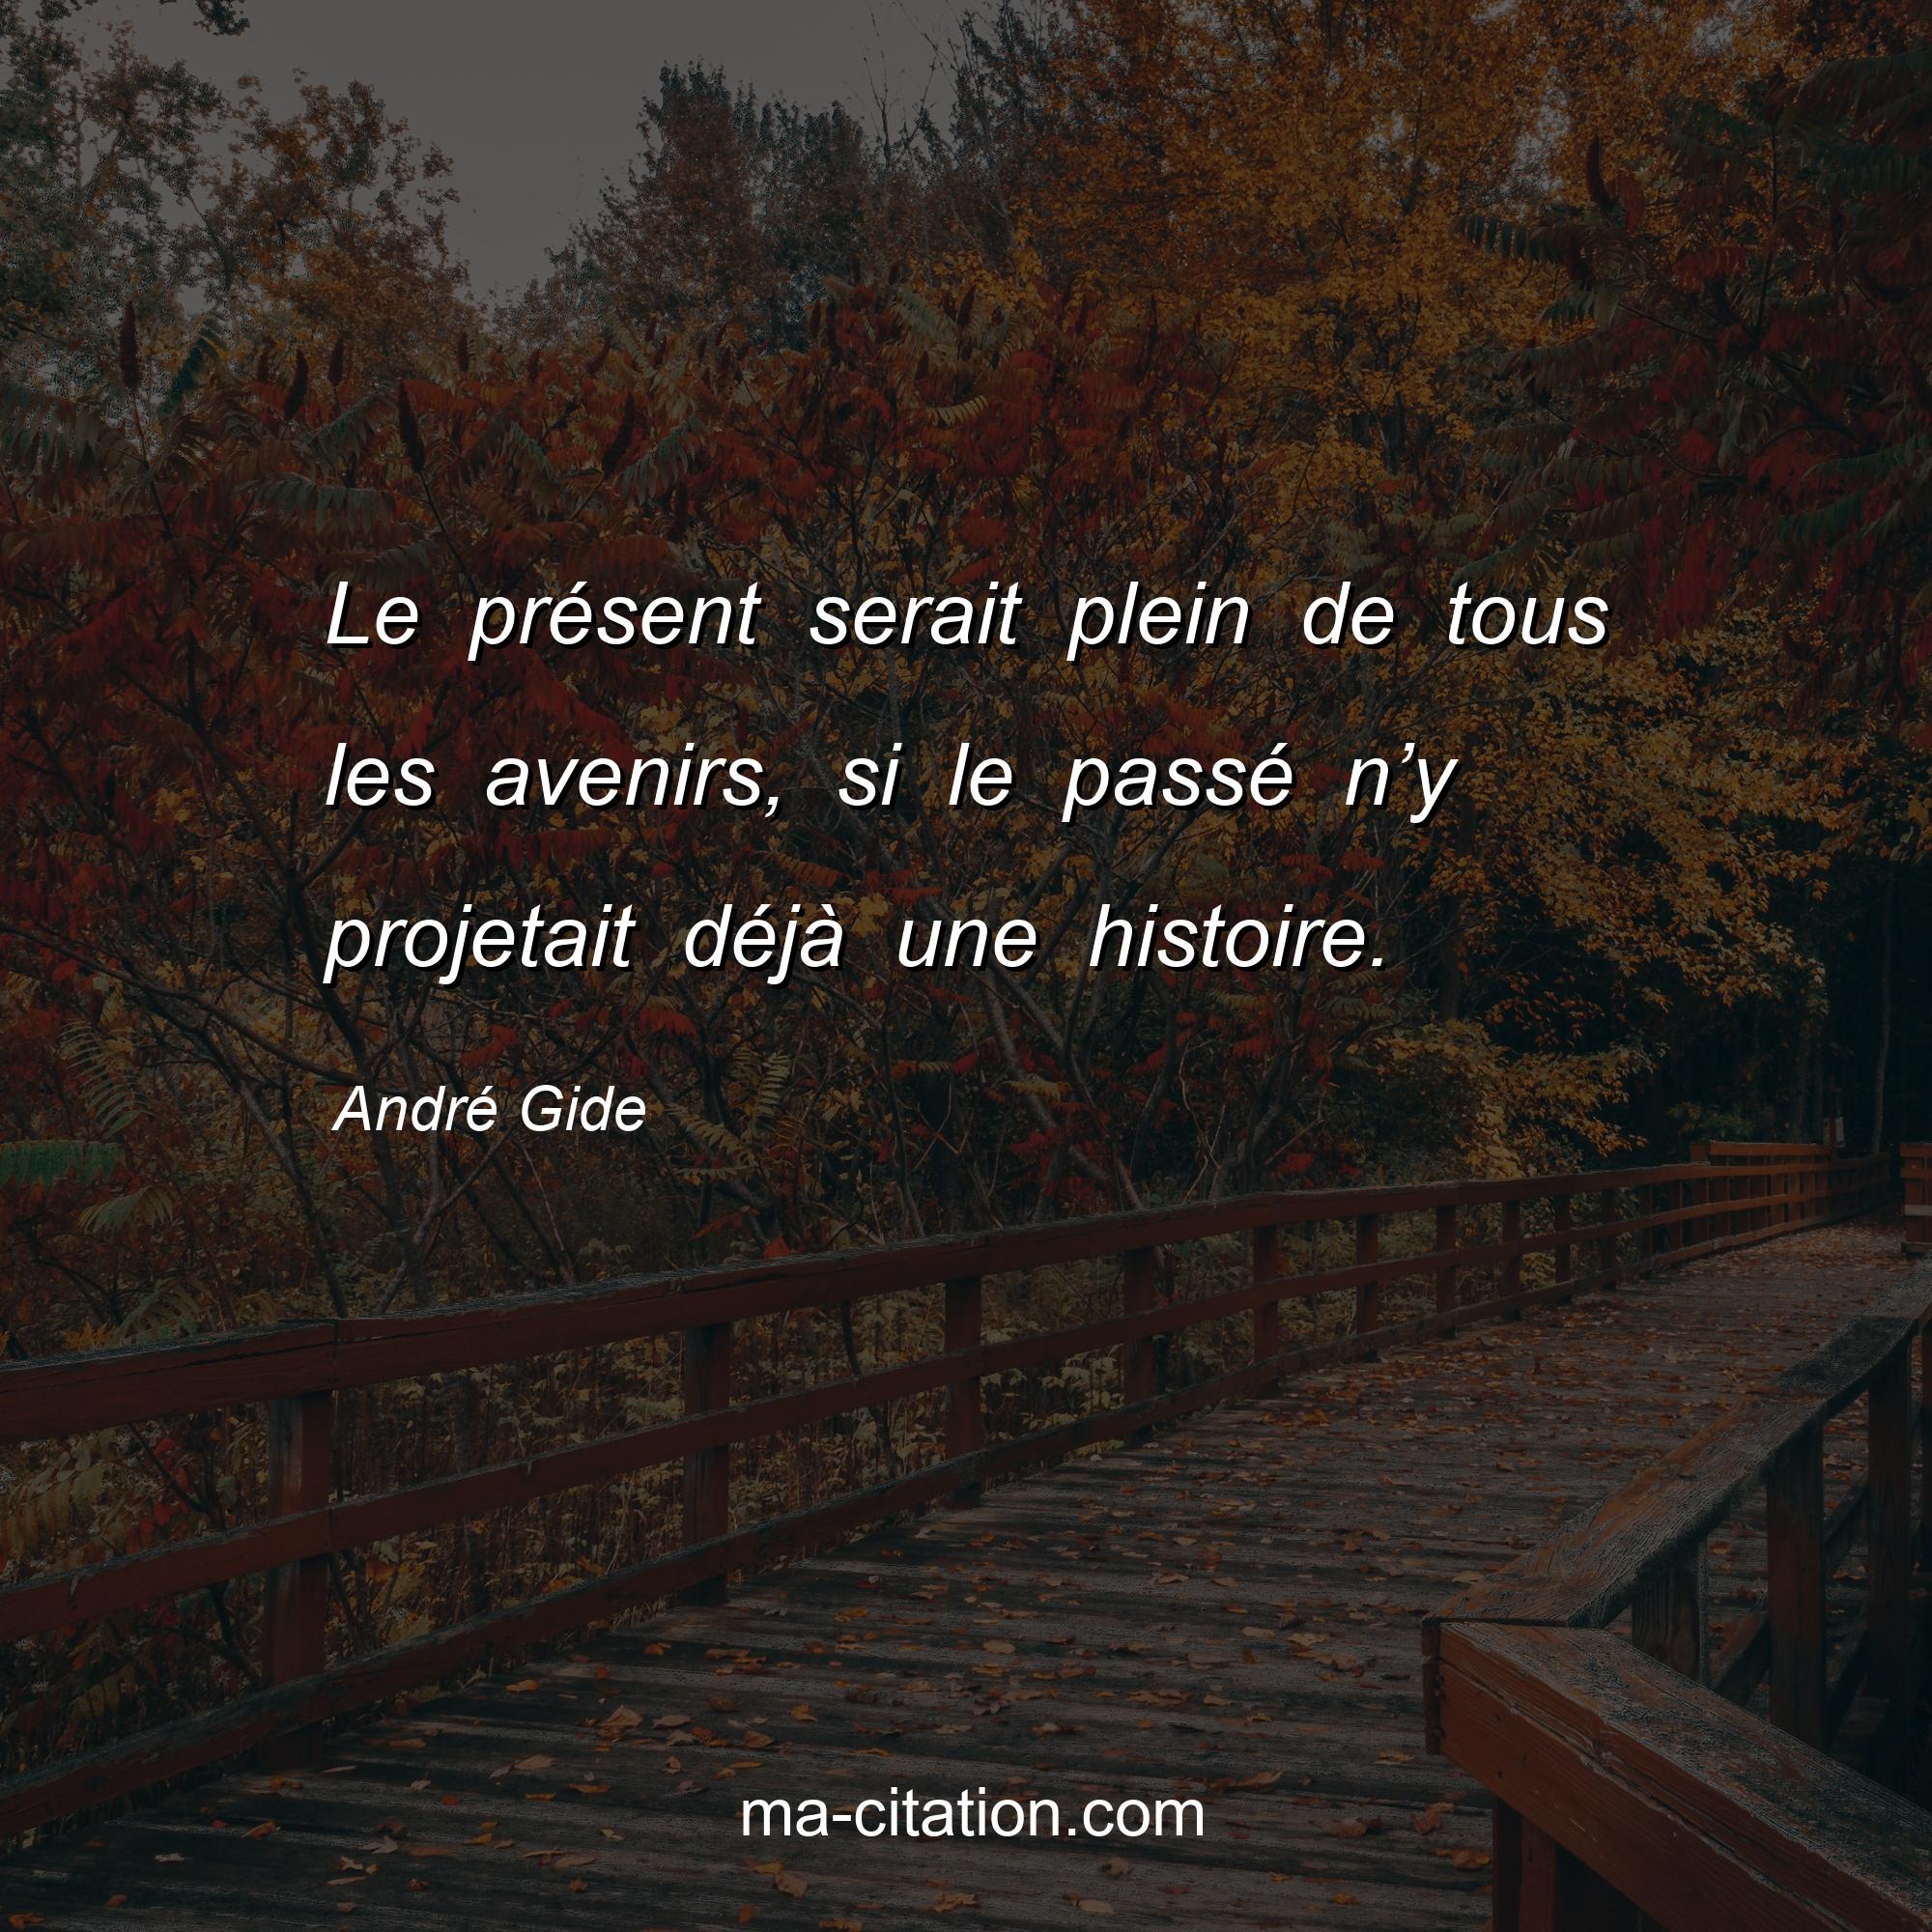 André Gide : Le présent serait plein de tous les avenirs, si le passé n’y projetait déjà une histoire.